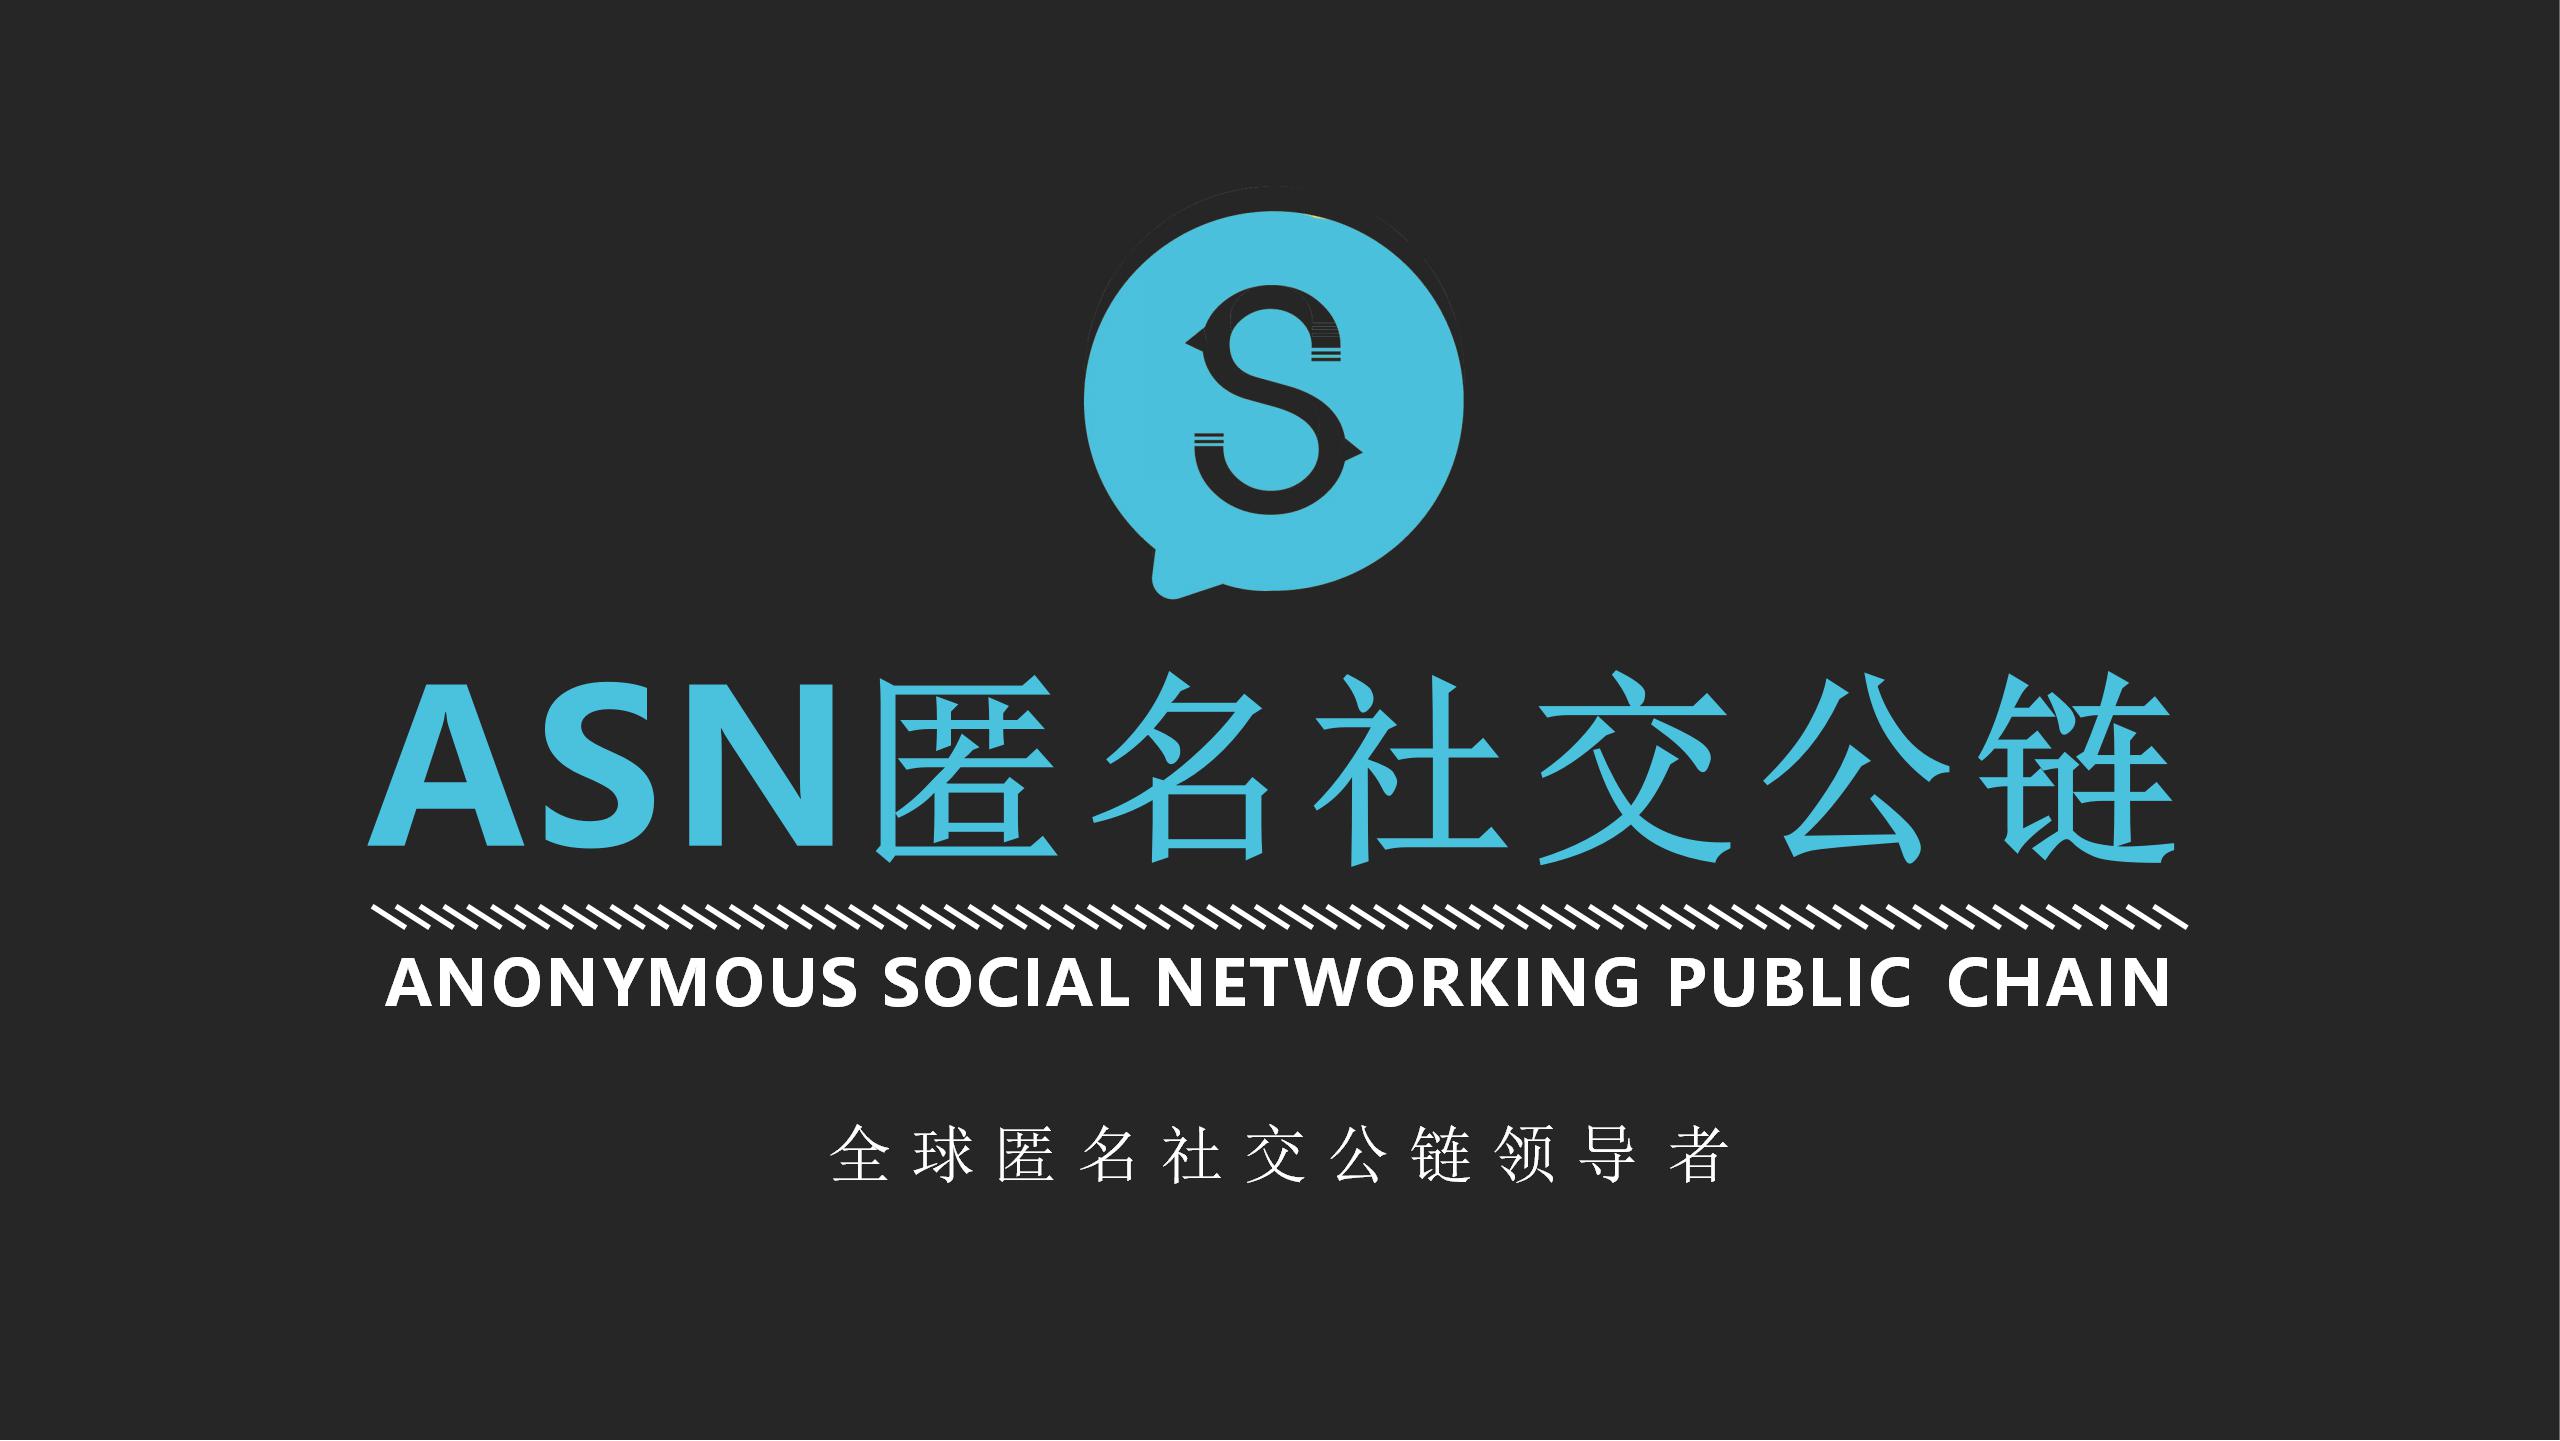 全球匿名社交公链领导者—ASN匿名社交公链